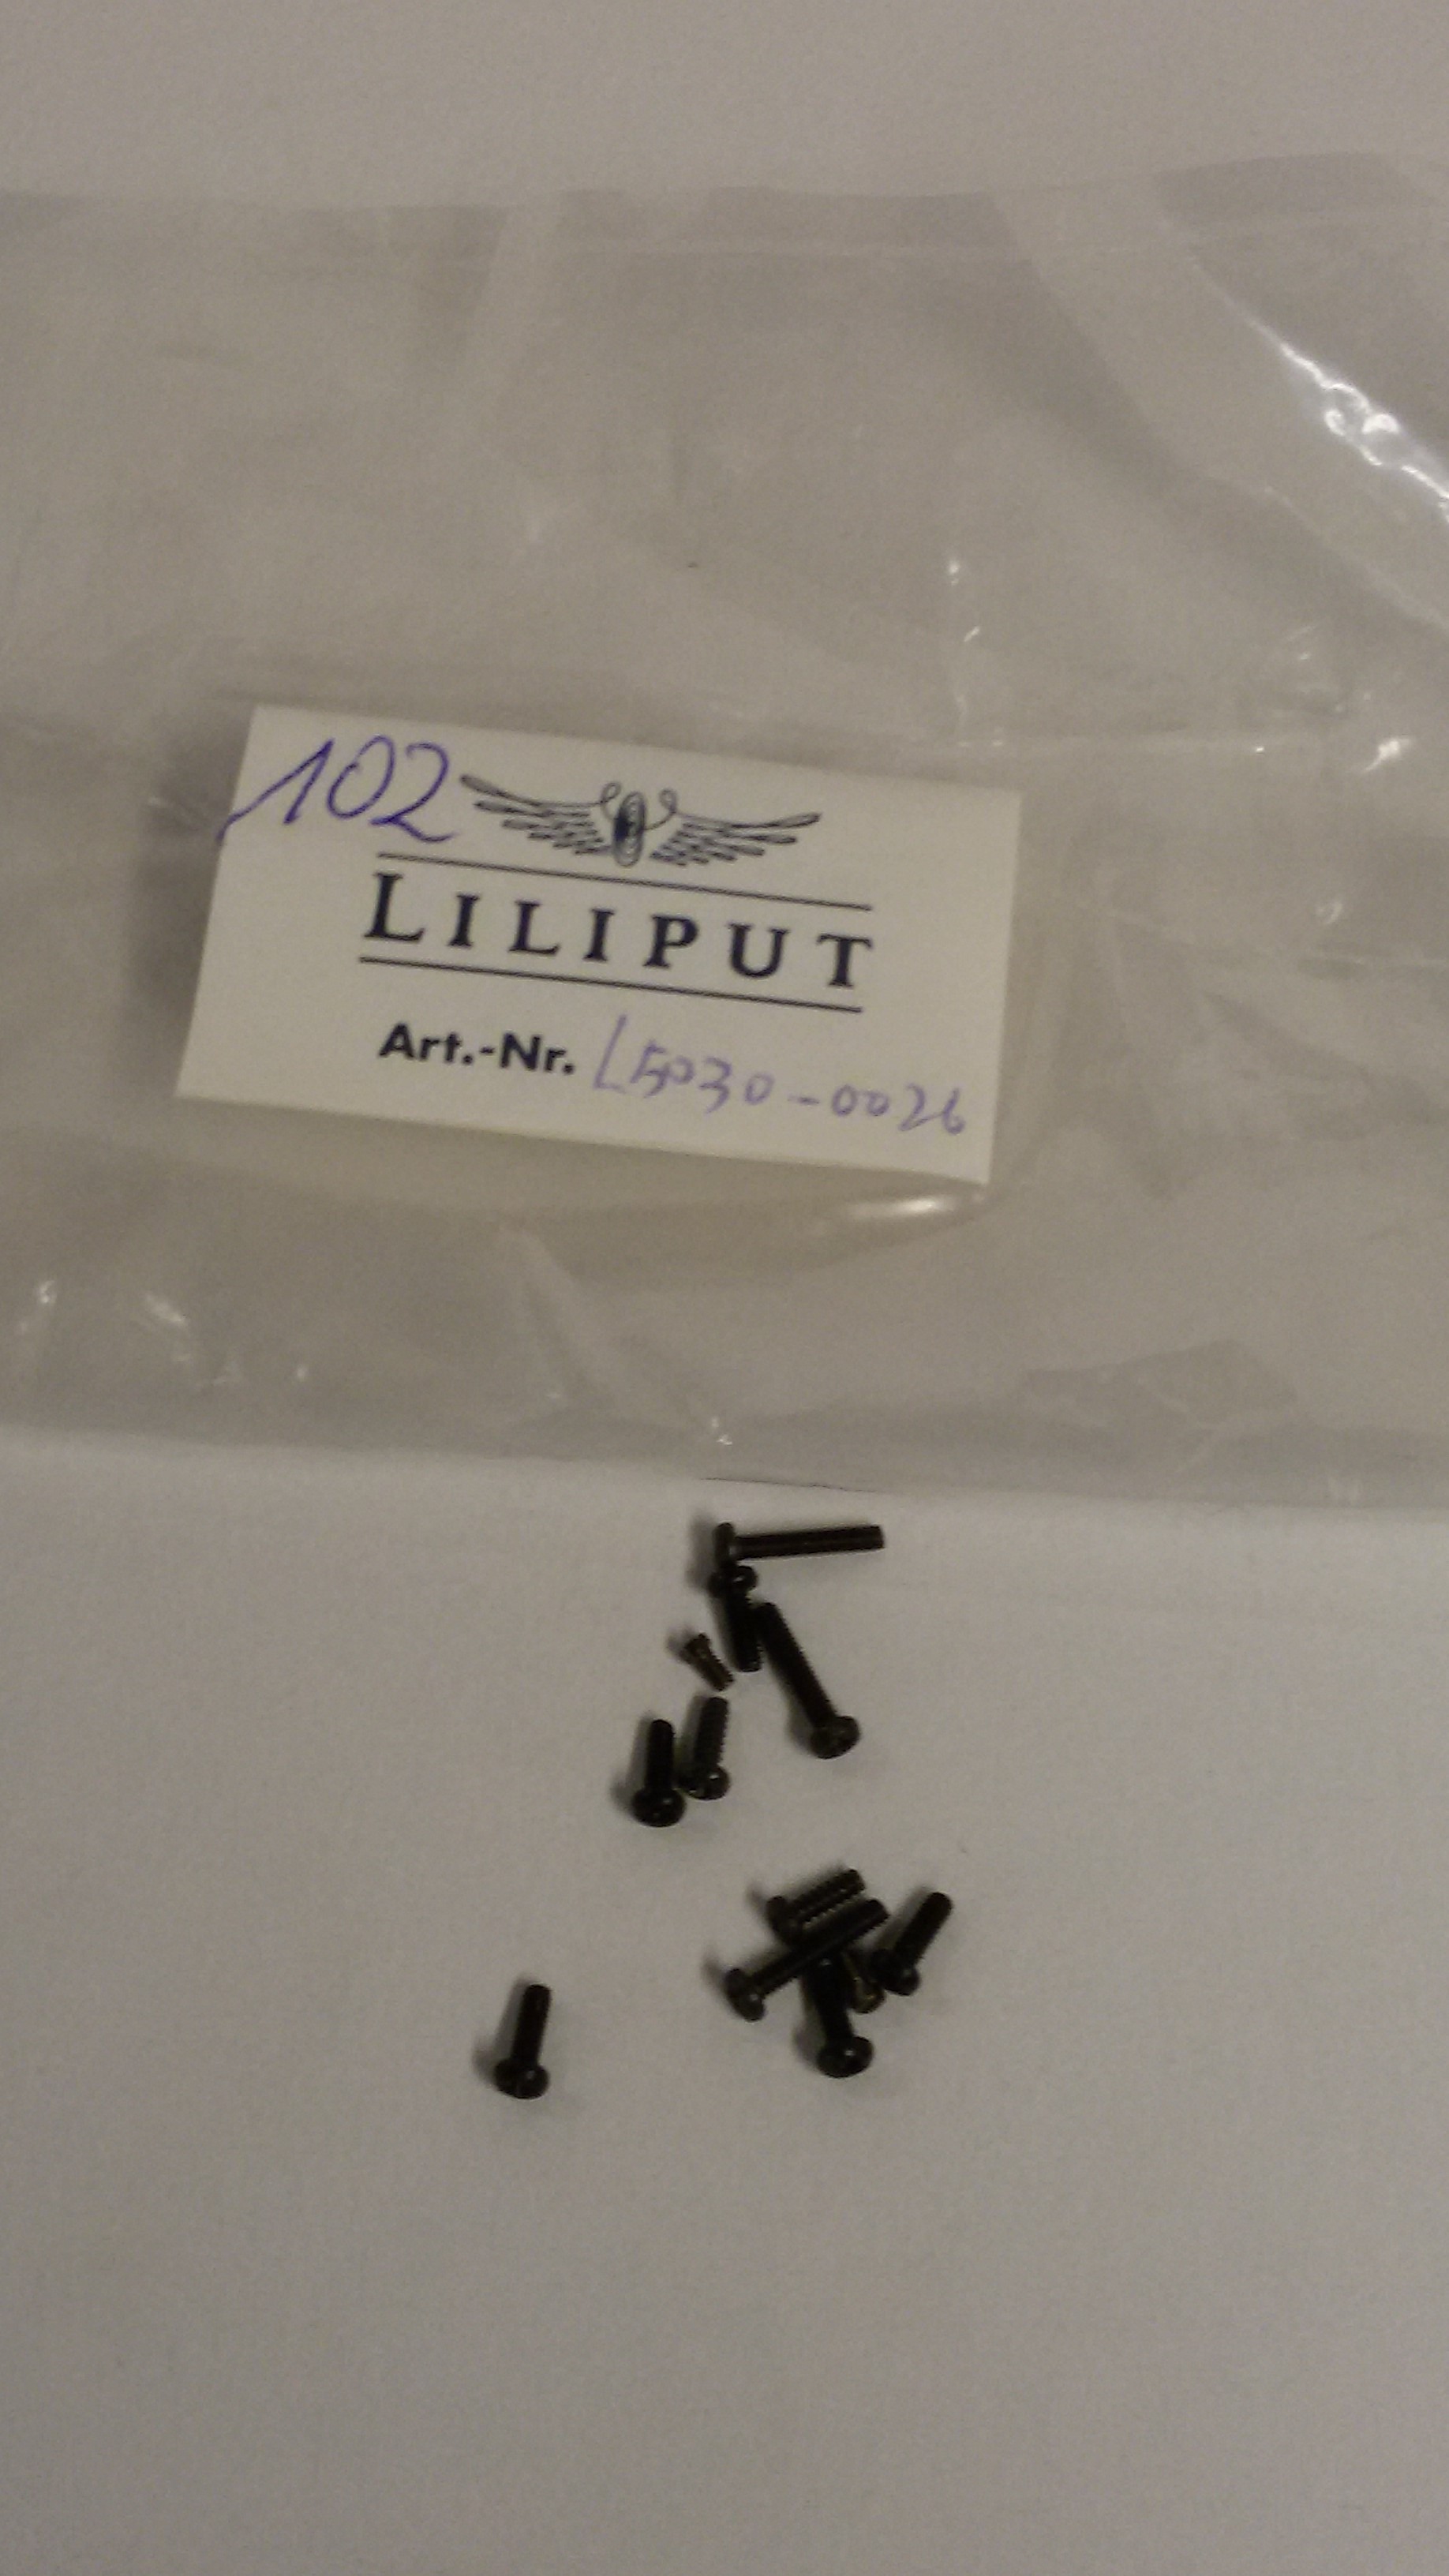 *LO 102* Liliput Ersatzteil L50300026 Schrauben verschiedene Größen 12 Stck.